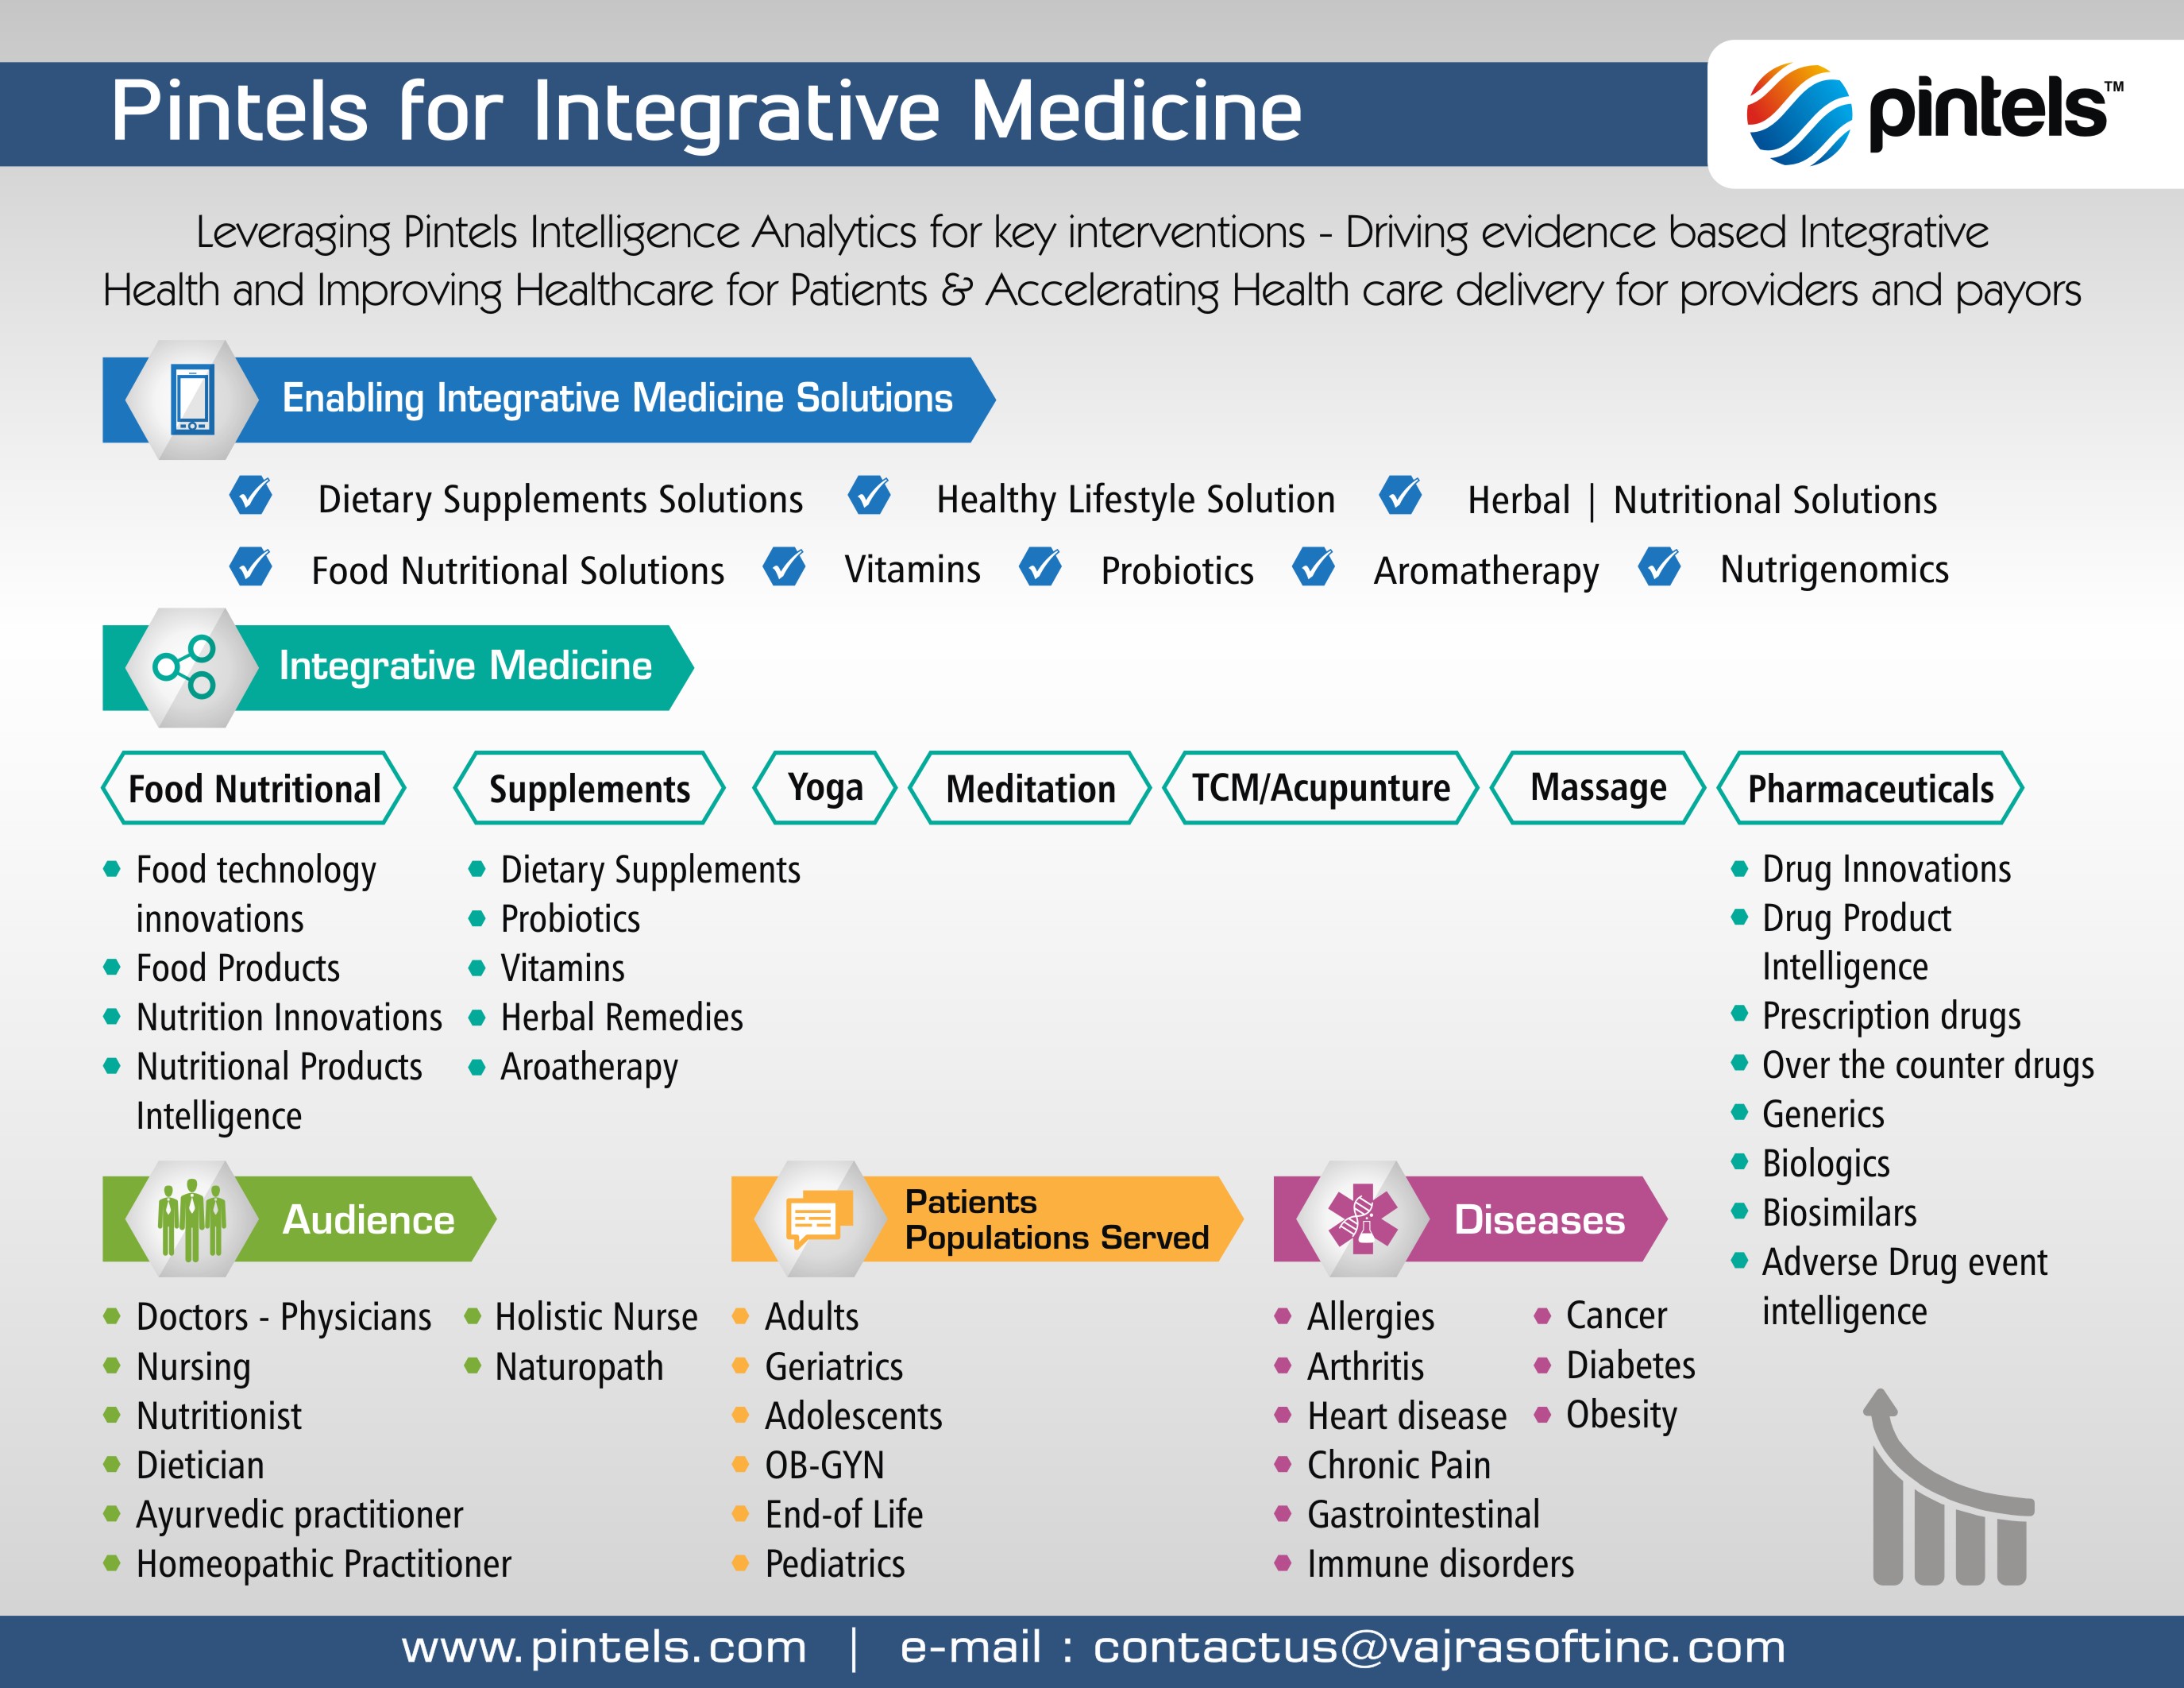 Innovations driving Integrative Medicine